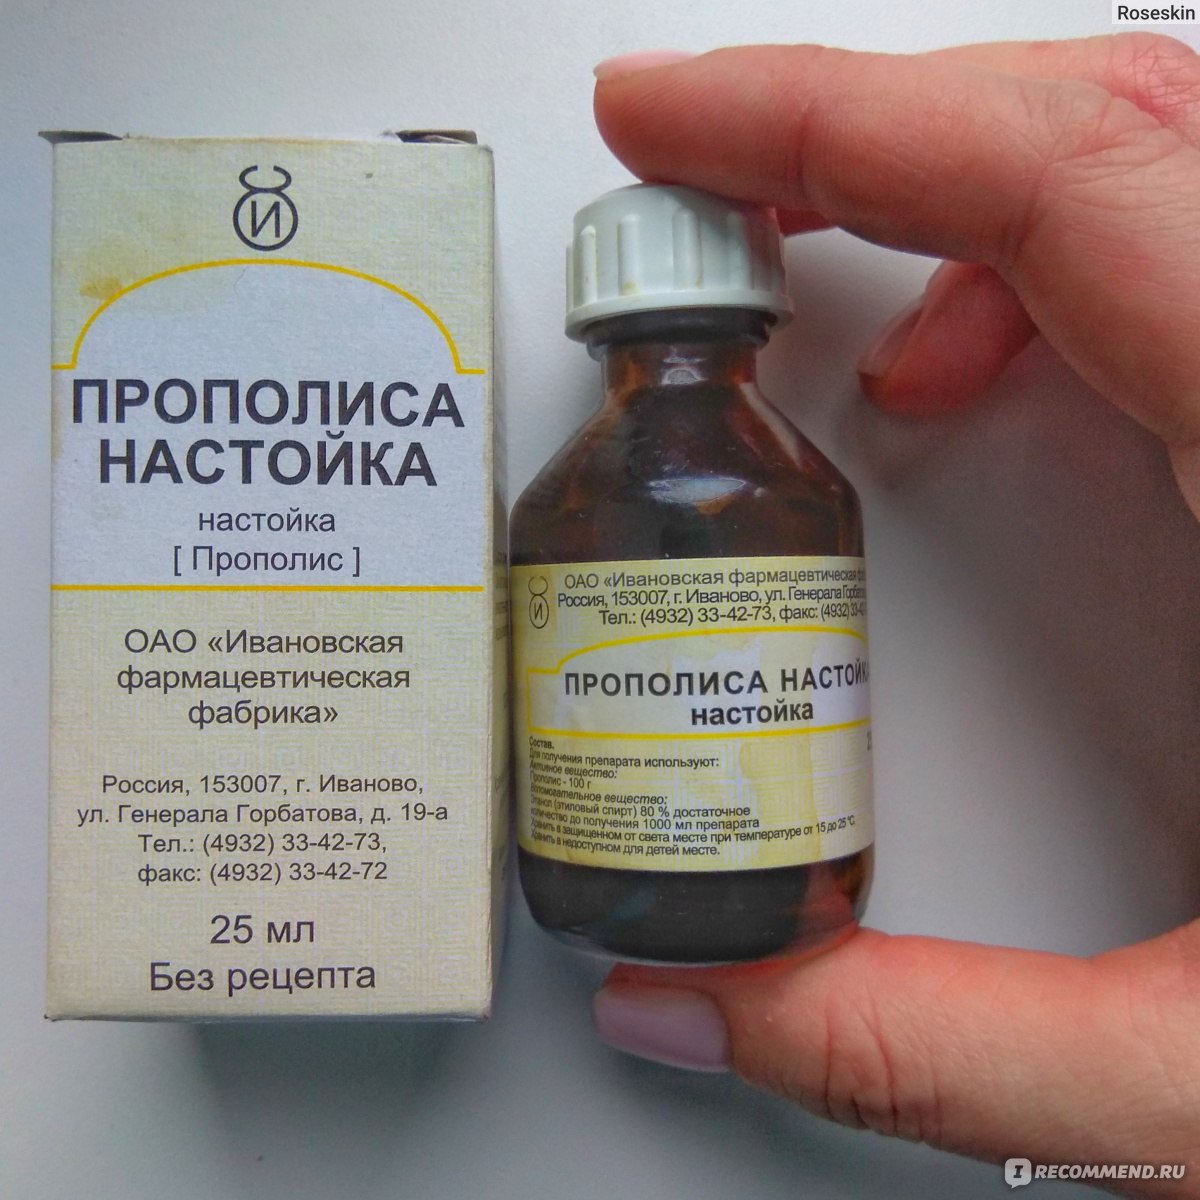 Антисептическое средство Настойка прополиса - «Как быстро вылечить простуду за 37 рублей: впервые в жизни боль в горле и температура покинули меня так быстро. » - отзывы